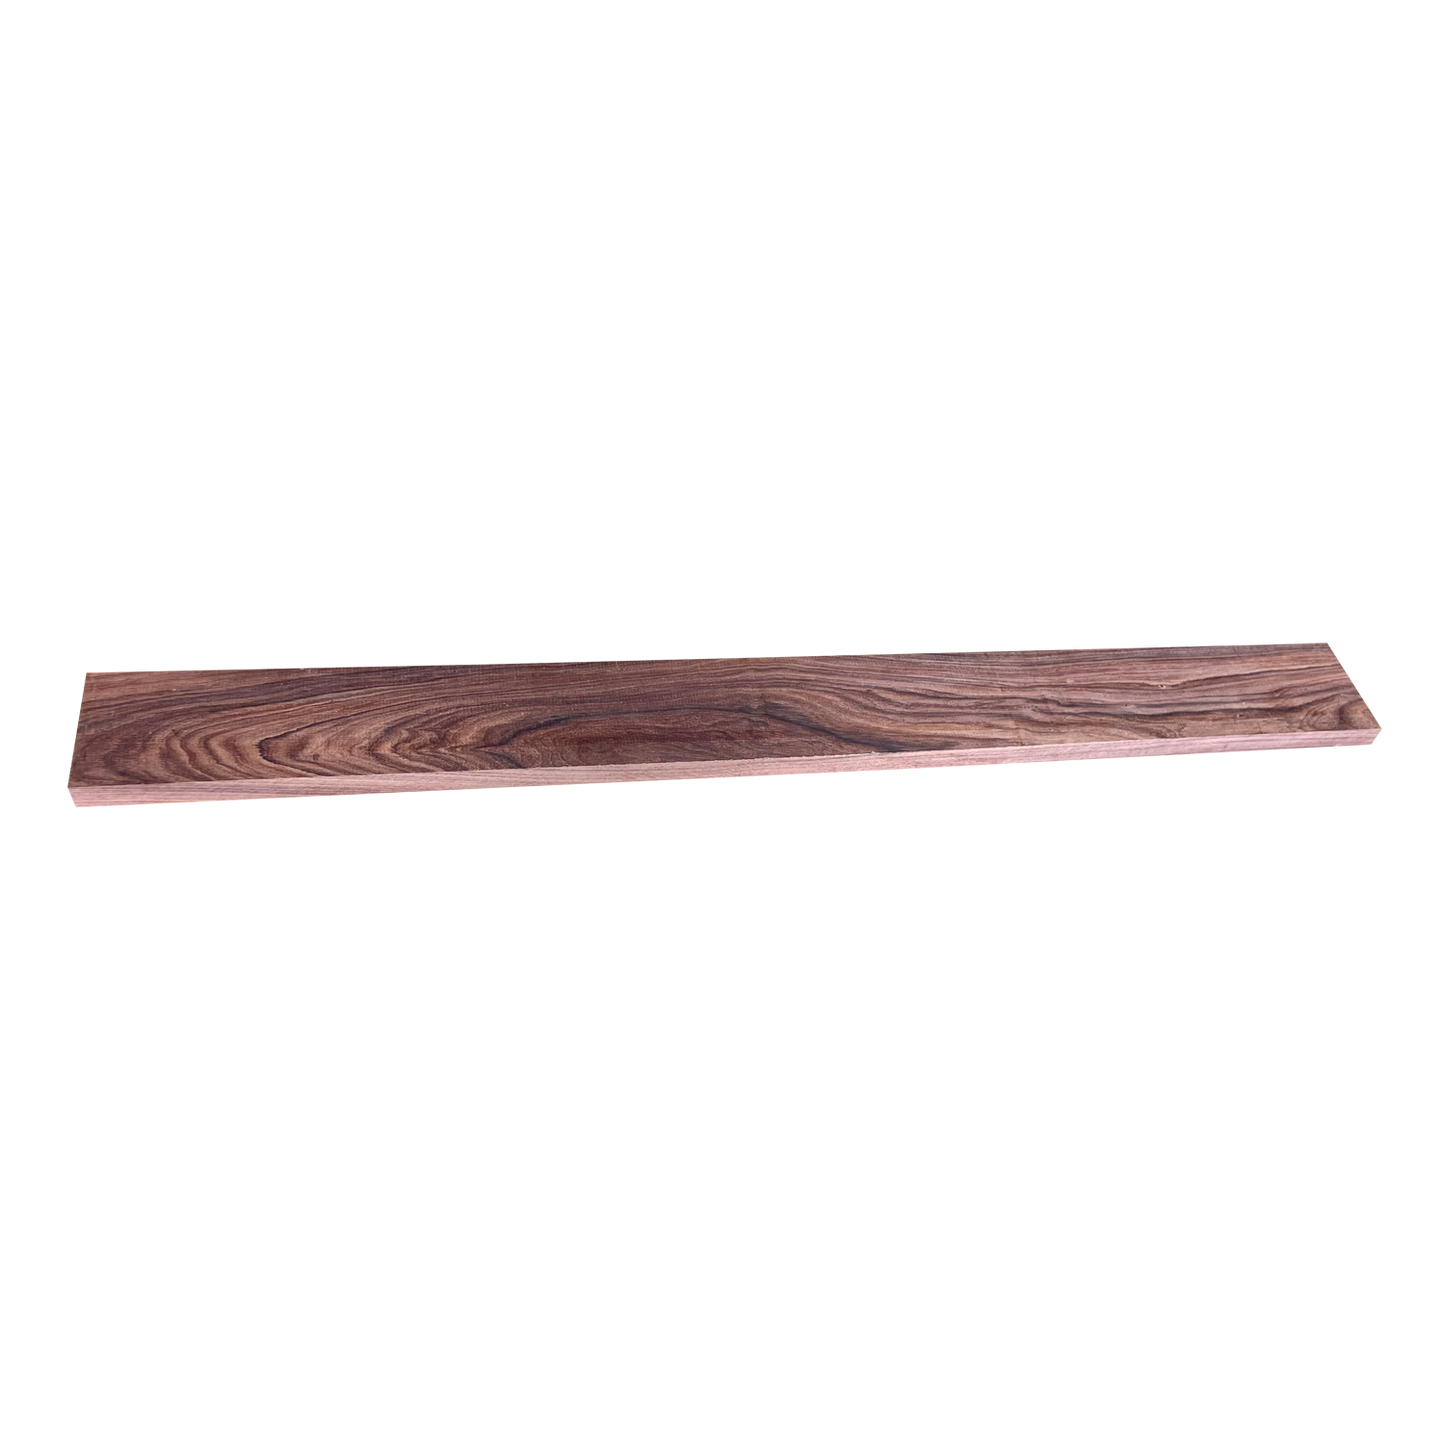 Bolivian Rosewood - 3/4" Dimensional Lumber